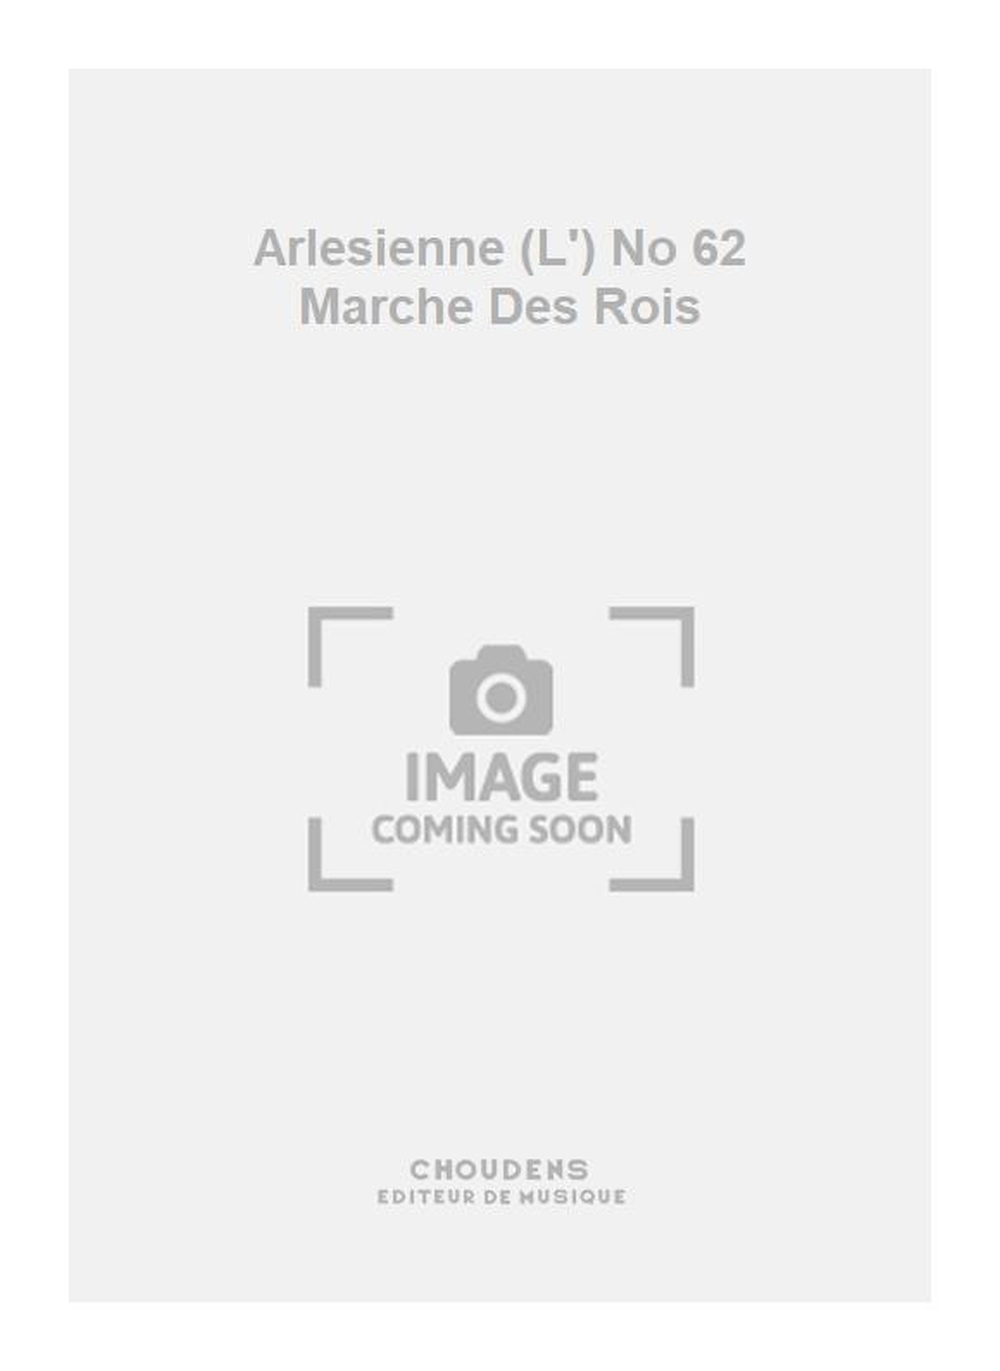 Georges Bizet: Arlesienne (L') No 62 Marche Des Rois